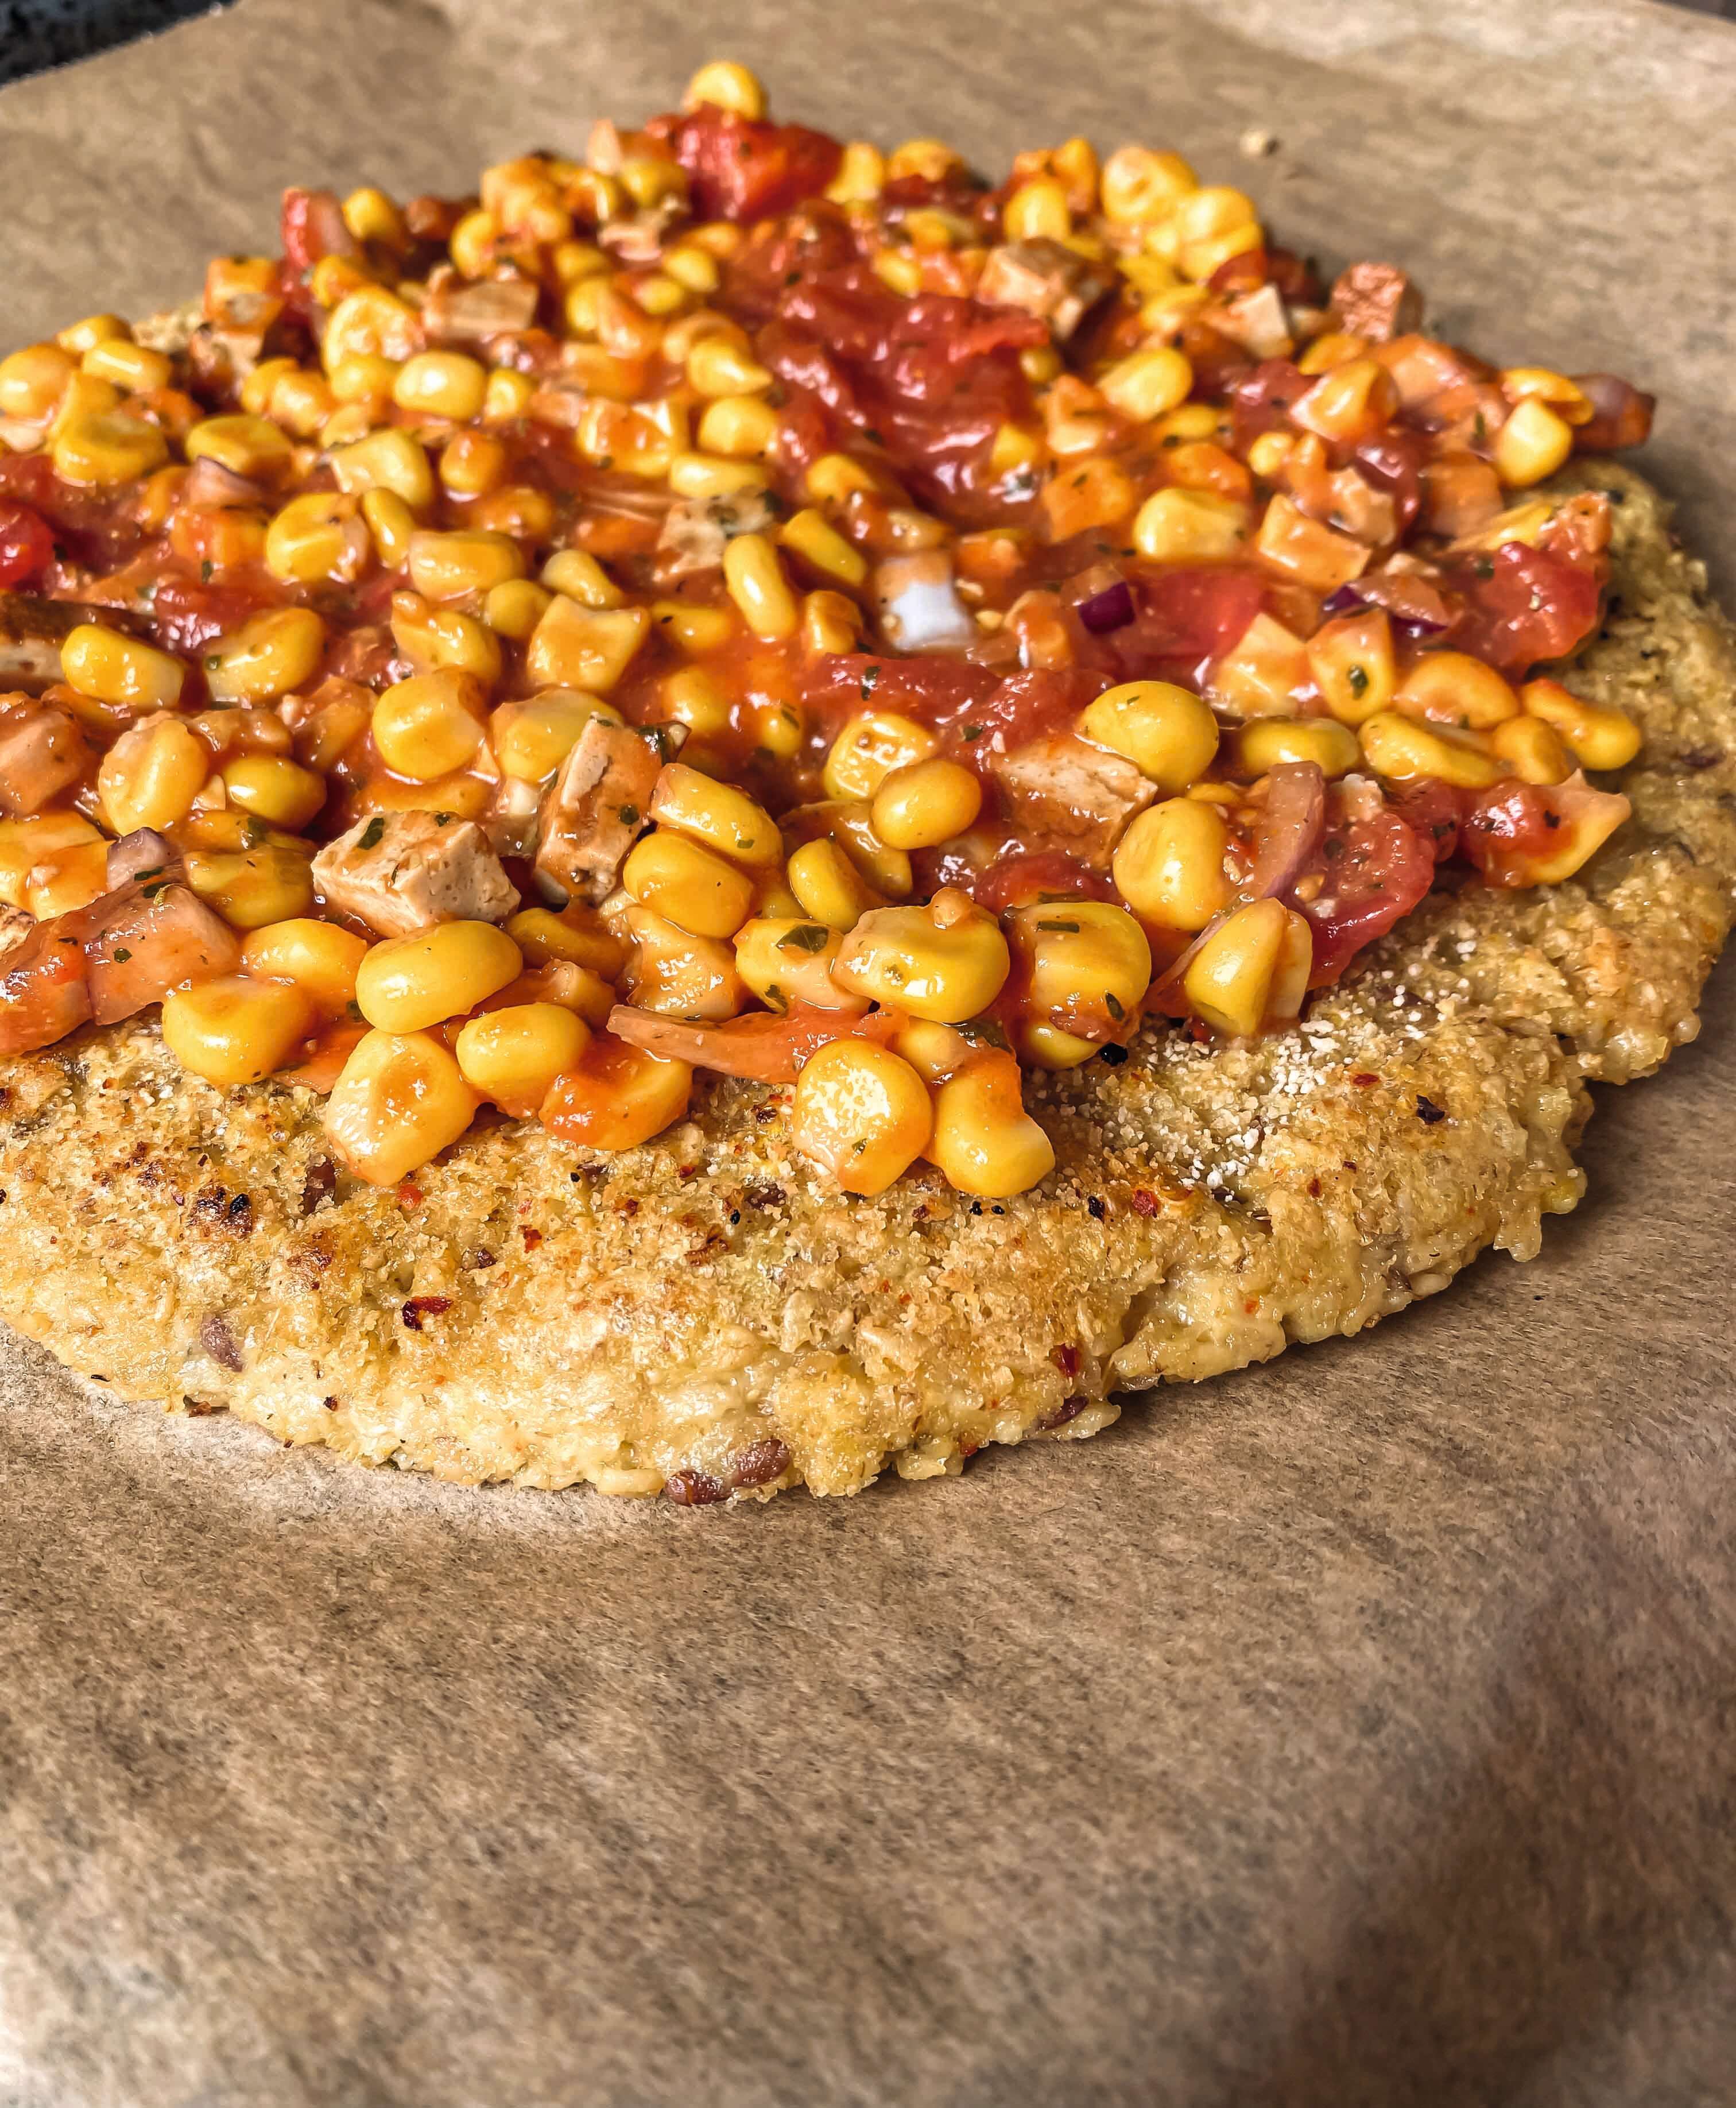 Belegen Sie die Pizza nachdem Sie die Tomatenmasse auf dem Hafer-Flockenteig verteilt haben mit dem klein geschnittenen Gemüse und Tofu